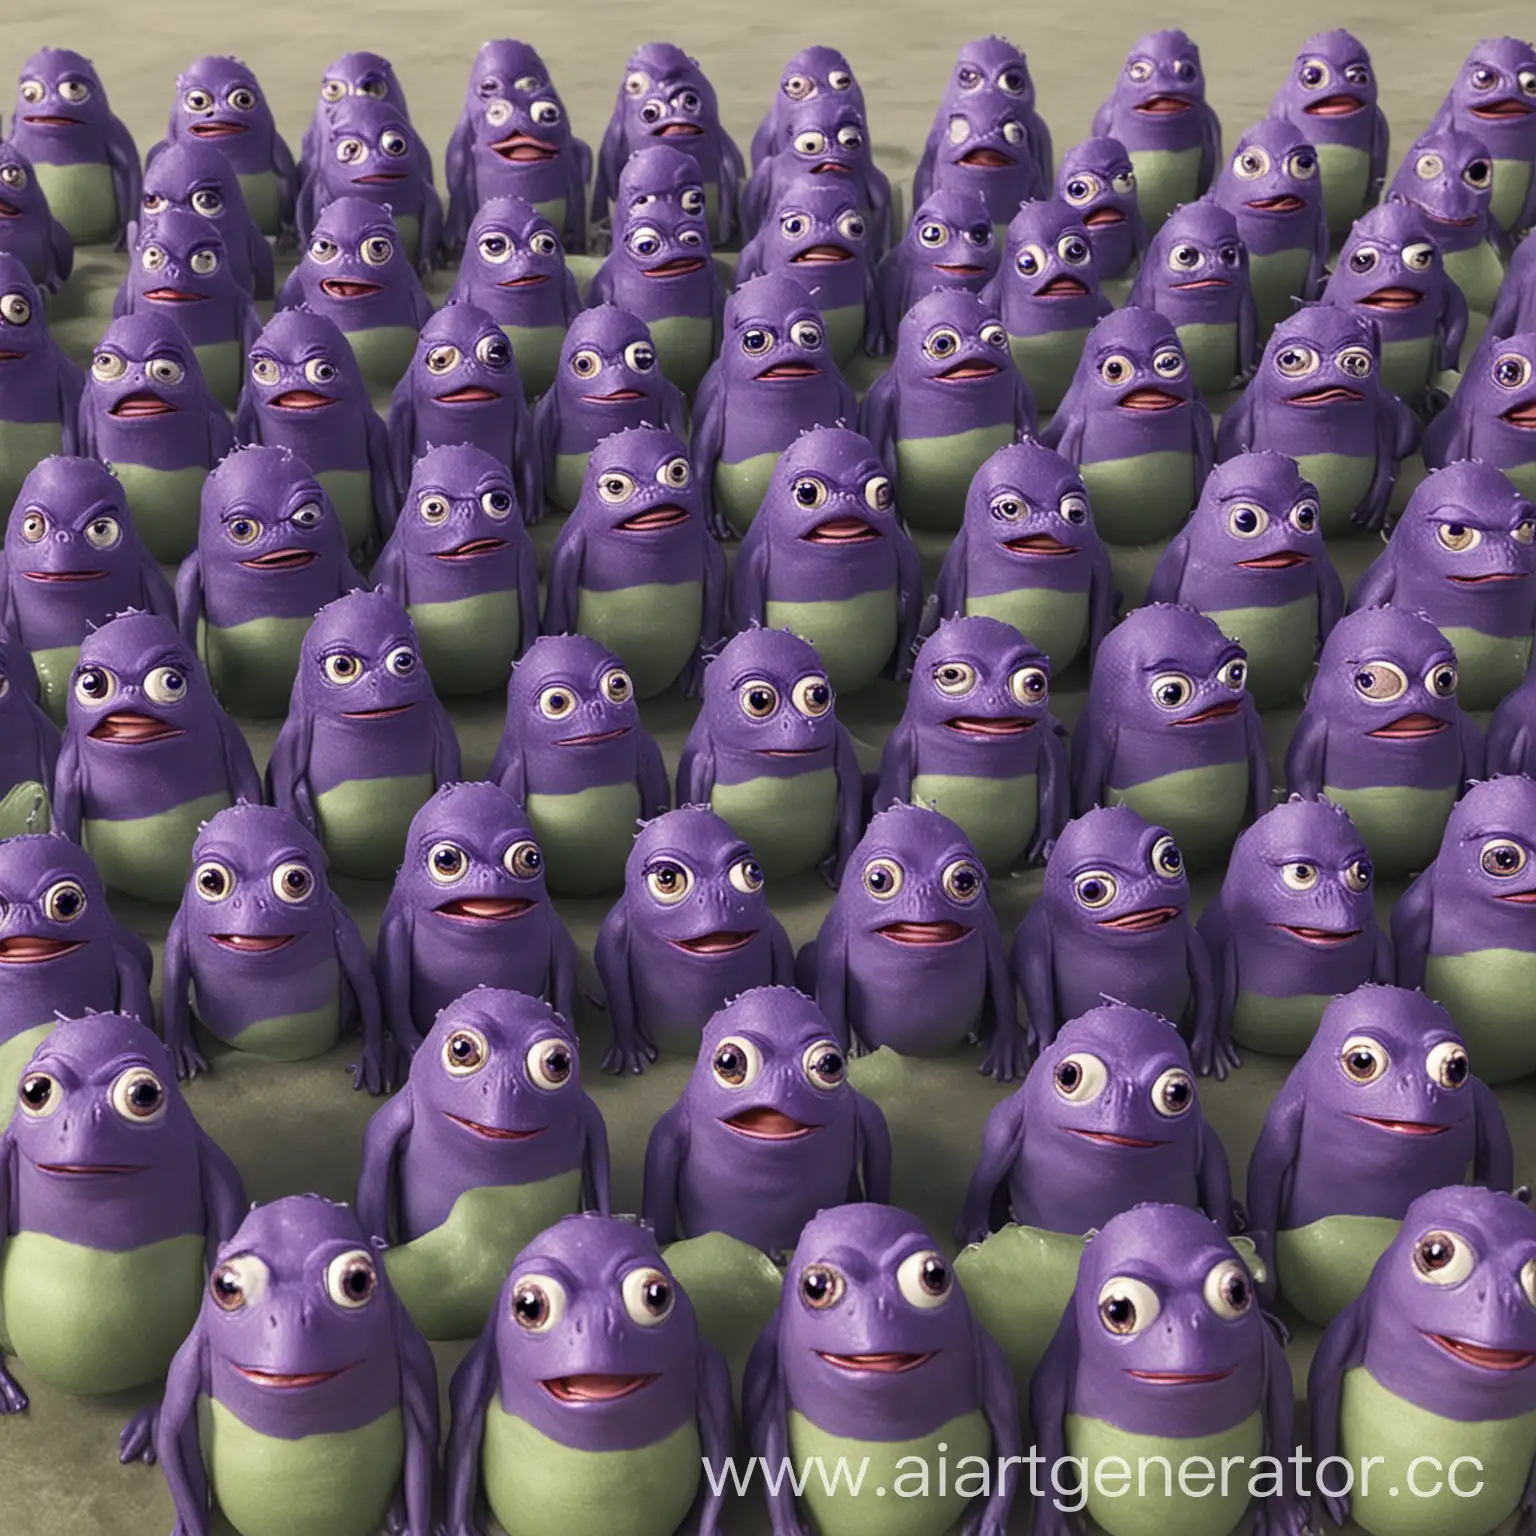 Сгенерируй толпу pepefrog с фиолетовыми головами, а в середине надпись "ZULTS" с одной надписью.